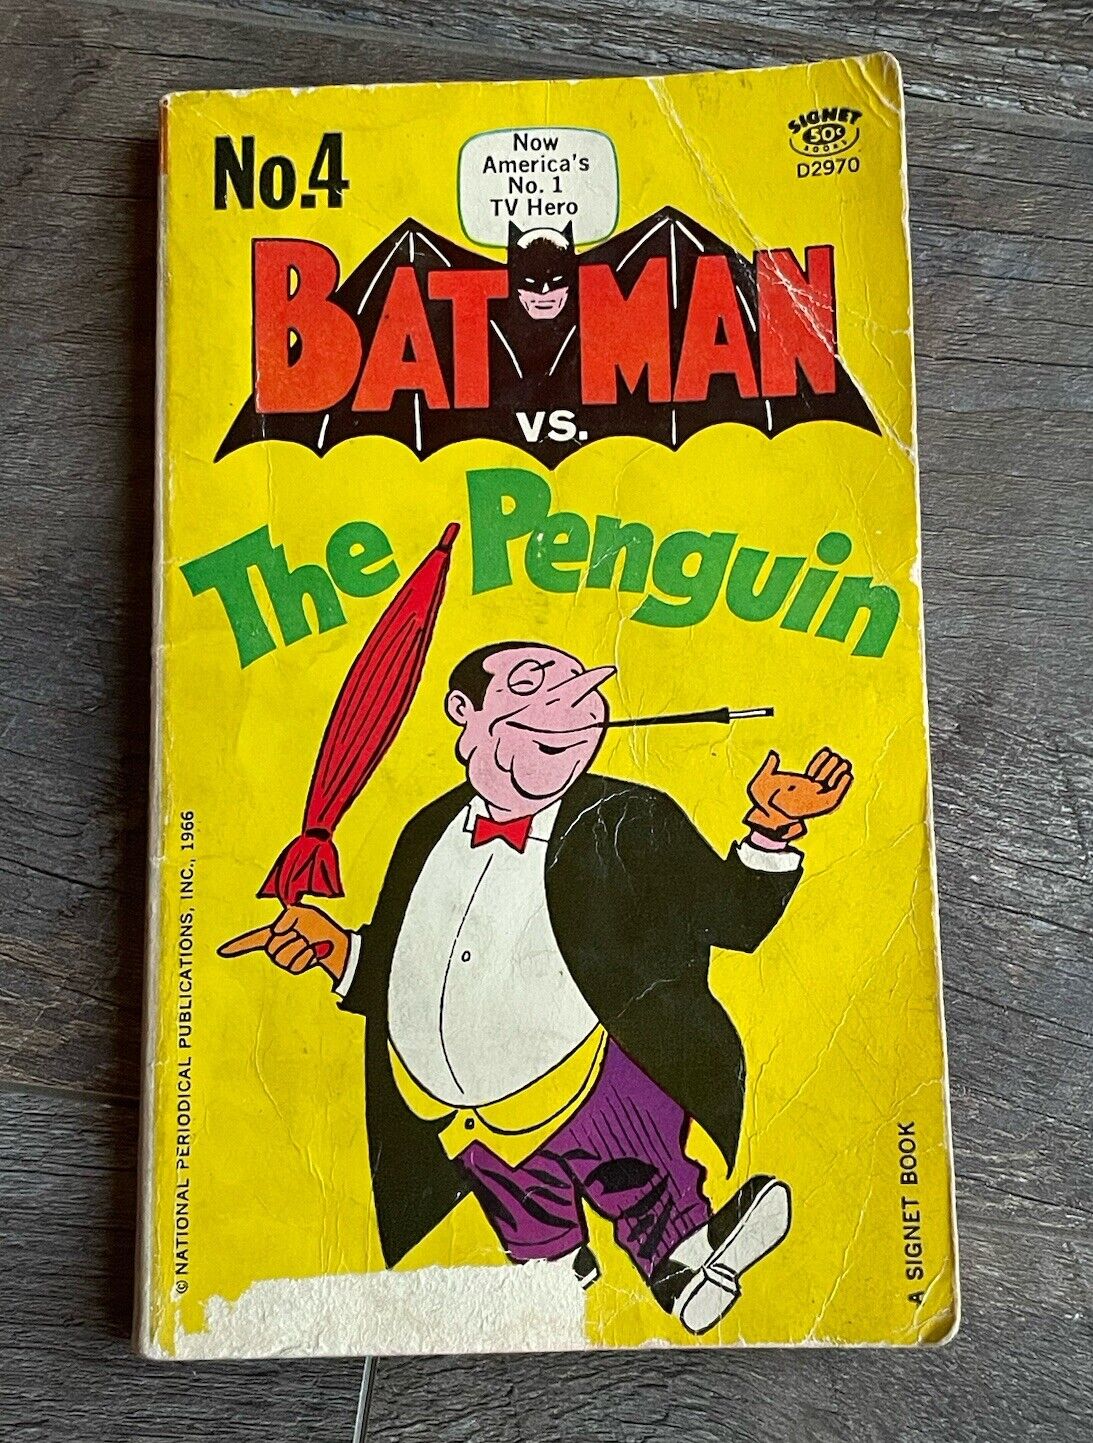 BATMAN vs THE PENGUIN #4 VINTAGE 1966 SIGNET PAPERBACK BOOK 1st PRINT D2970